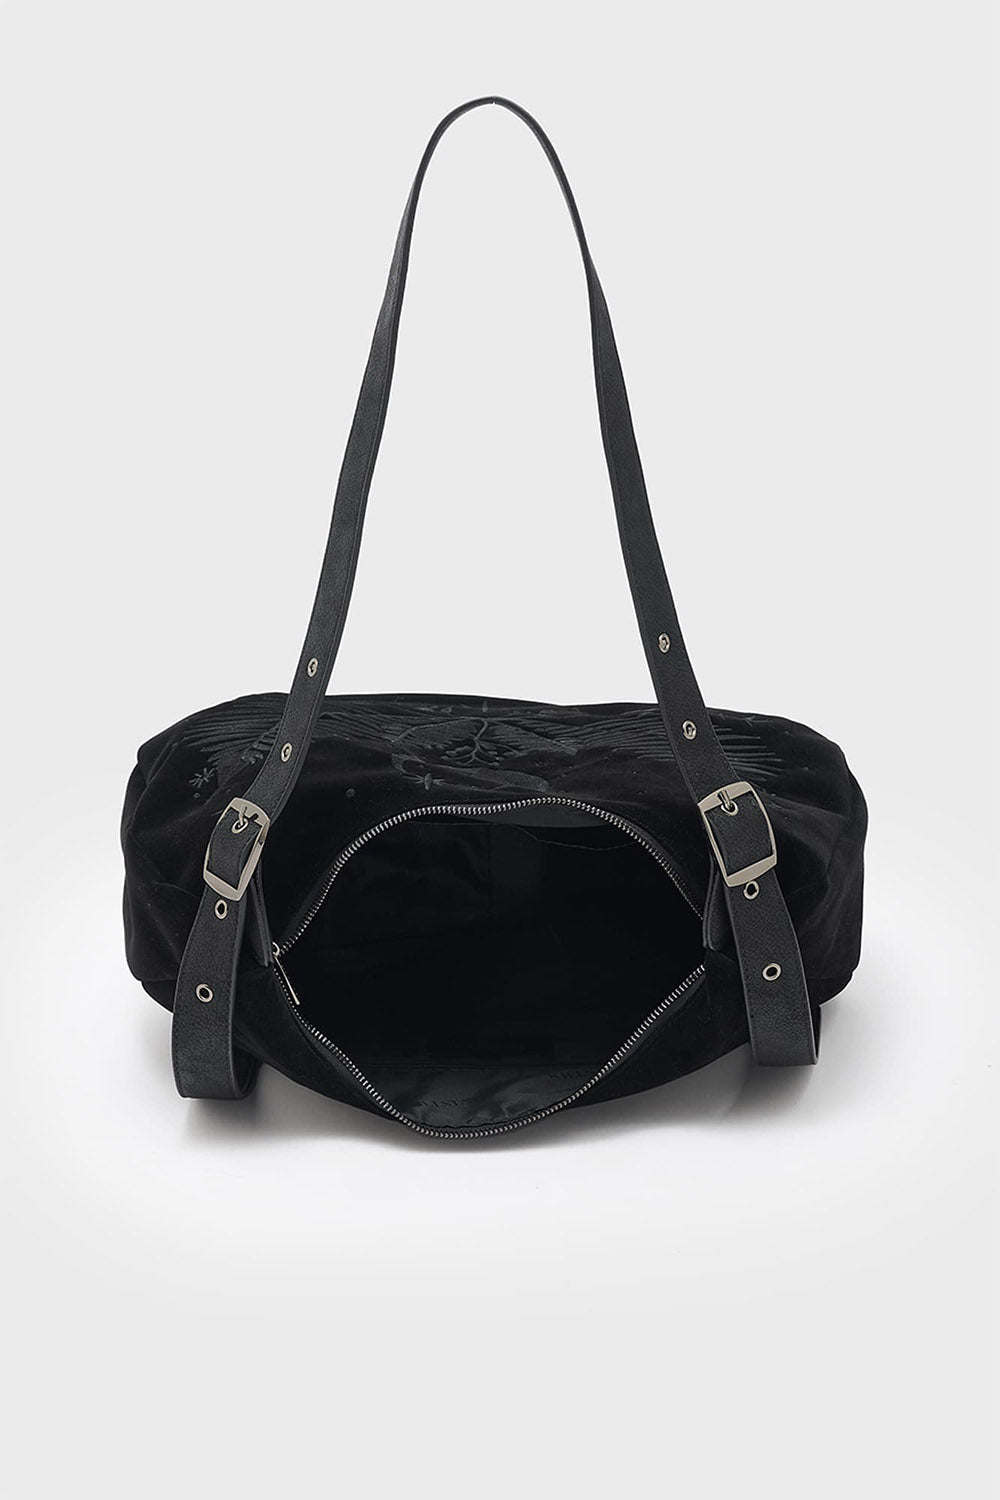 gothic black hobo slouchy shoulder bag